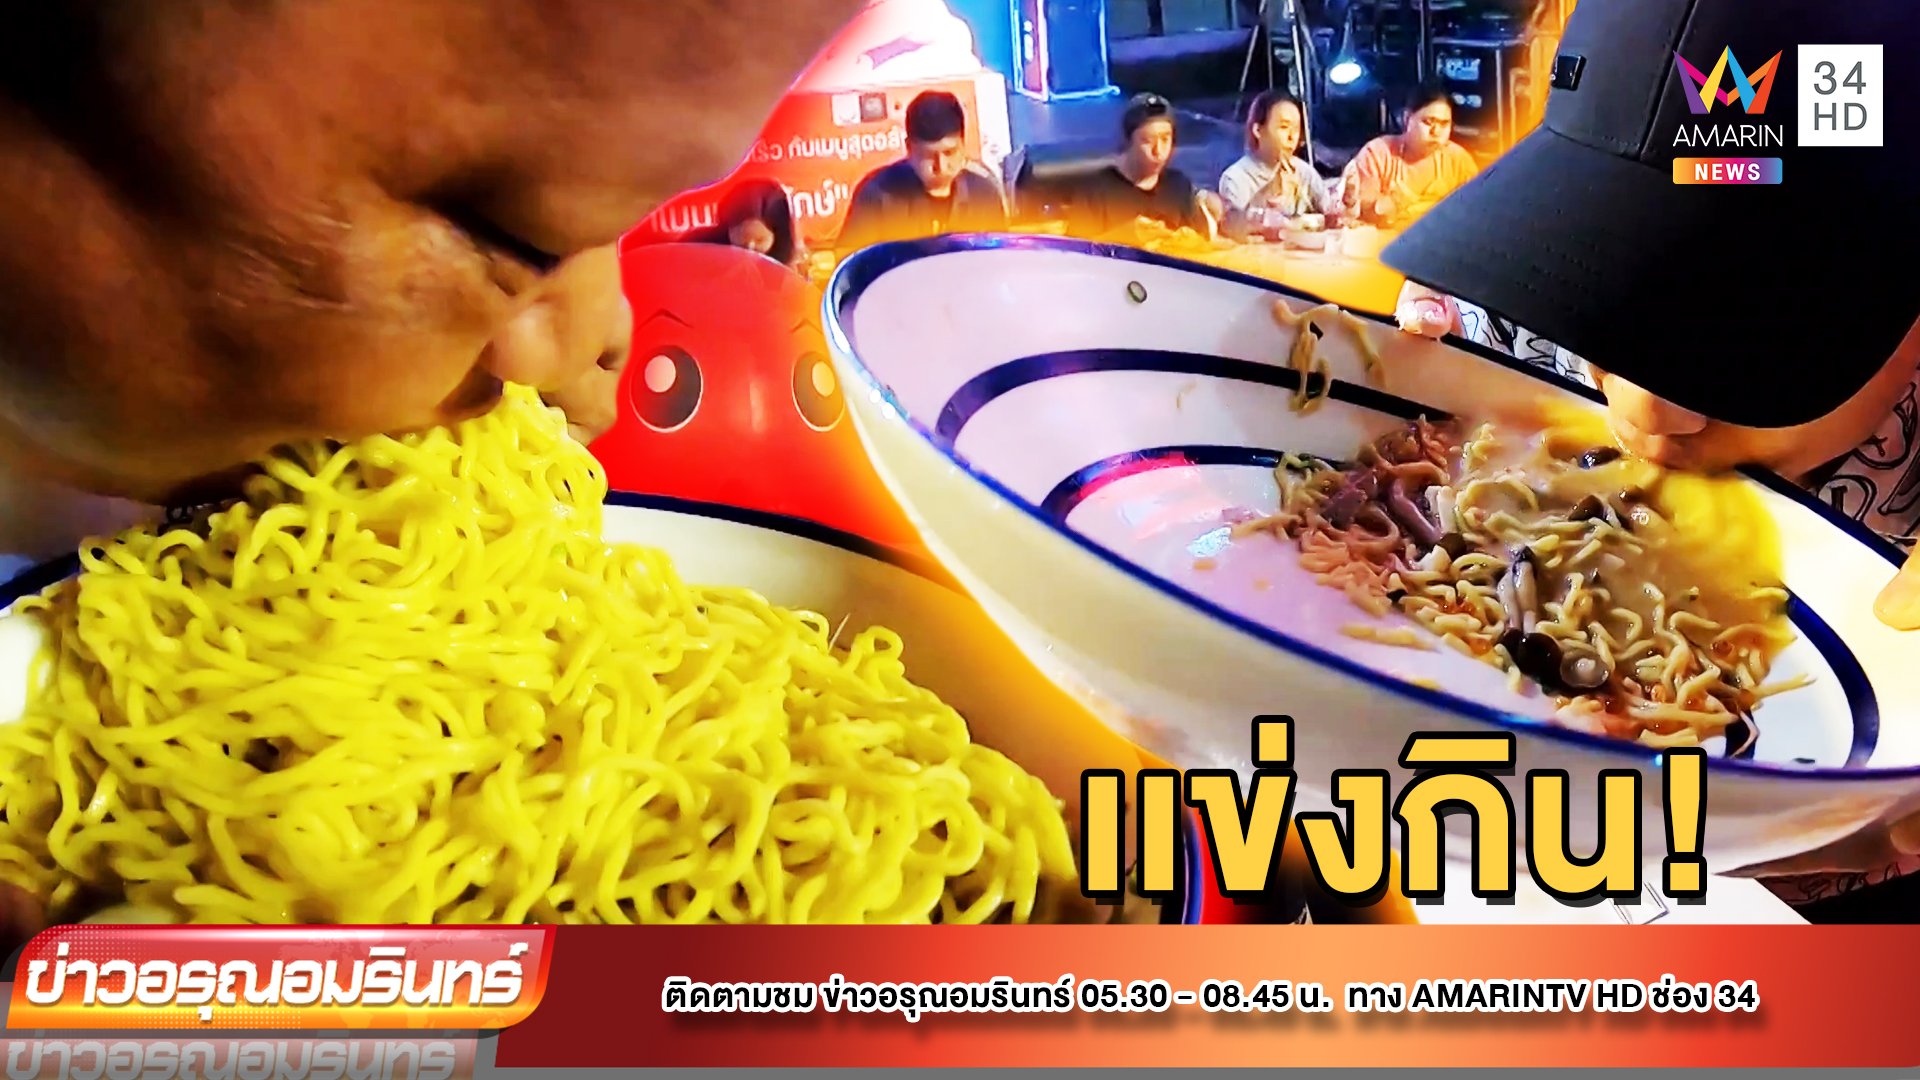 ล่าเงิน! แข่งกินราเมนชามยักษ์ ชิงเงินรางวัล 5 พันบาท | ข่าวอรุณอมรินทร์ | 12 ต.ค. 65 | AMARIN TVHD34